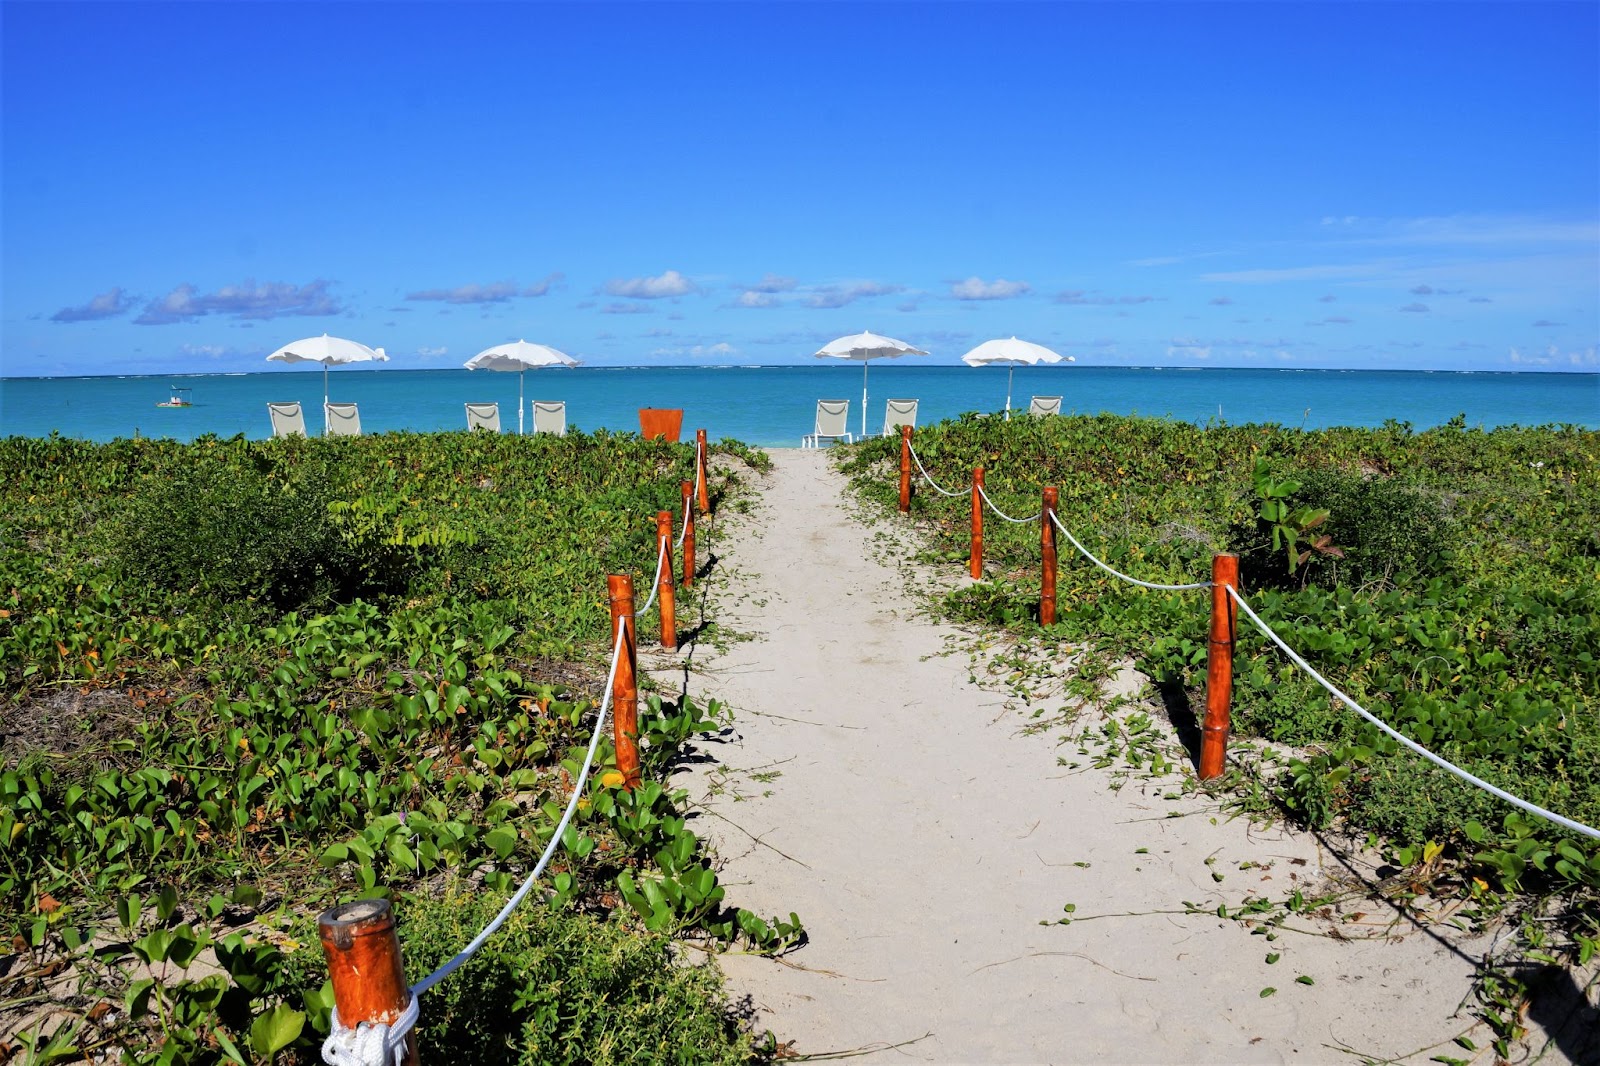 Estreito caminho de areia até uma das praias de Maragogi. Ele aparece entre áreas de vegetação rasteira e verde. Ao fundo, aparecem o mar e o céu azul, sem nuvens